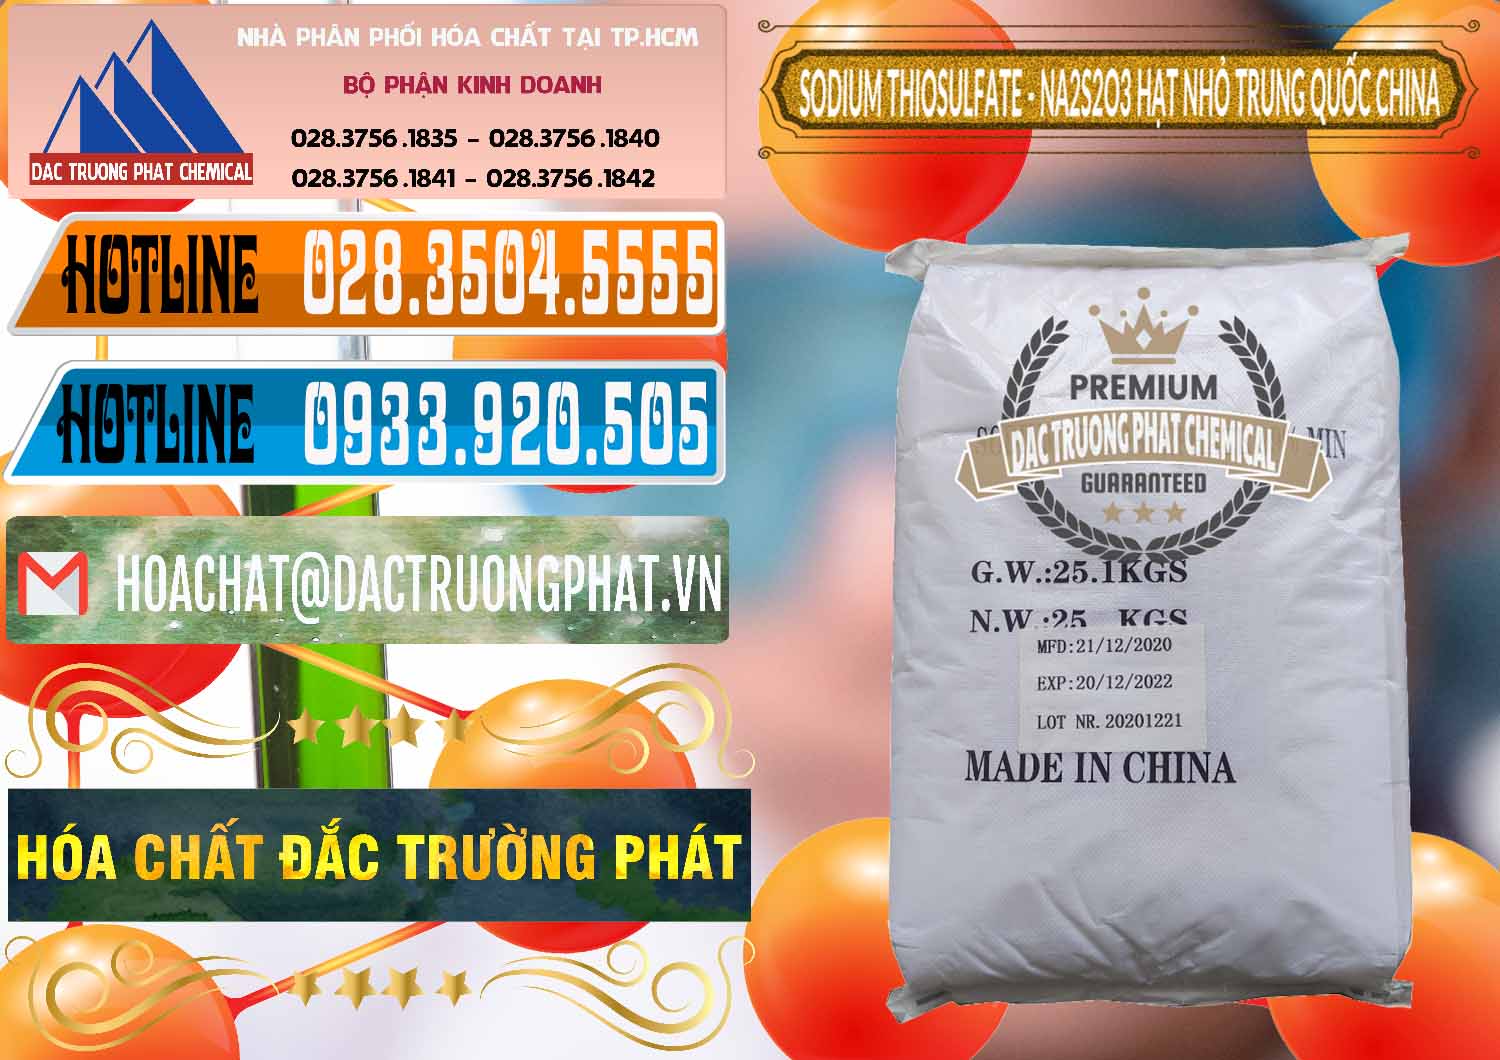 Công ty chuyên phân phối & bán Sodium Thiosulfate - NA2S2O3 Hạt Nhỏ Trung Quốc China - 0204 - Nơi chuyên kinh doanh & phân phối hóa chất tại TP.HCM - stmp.net